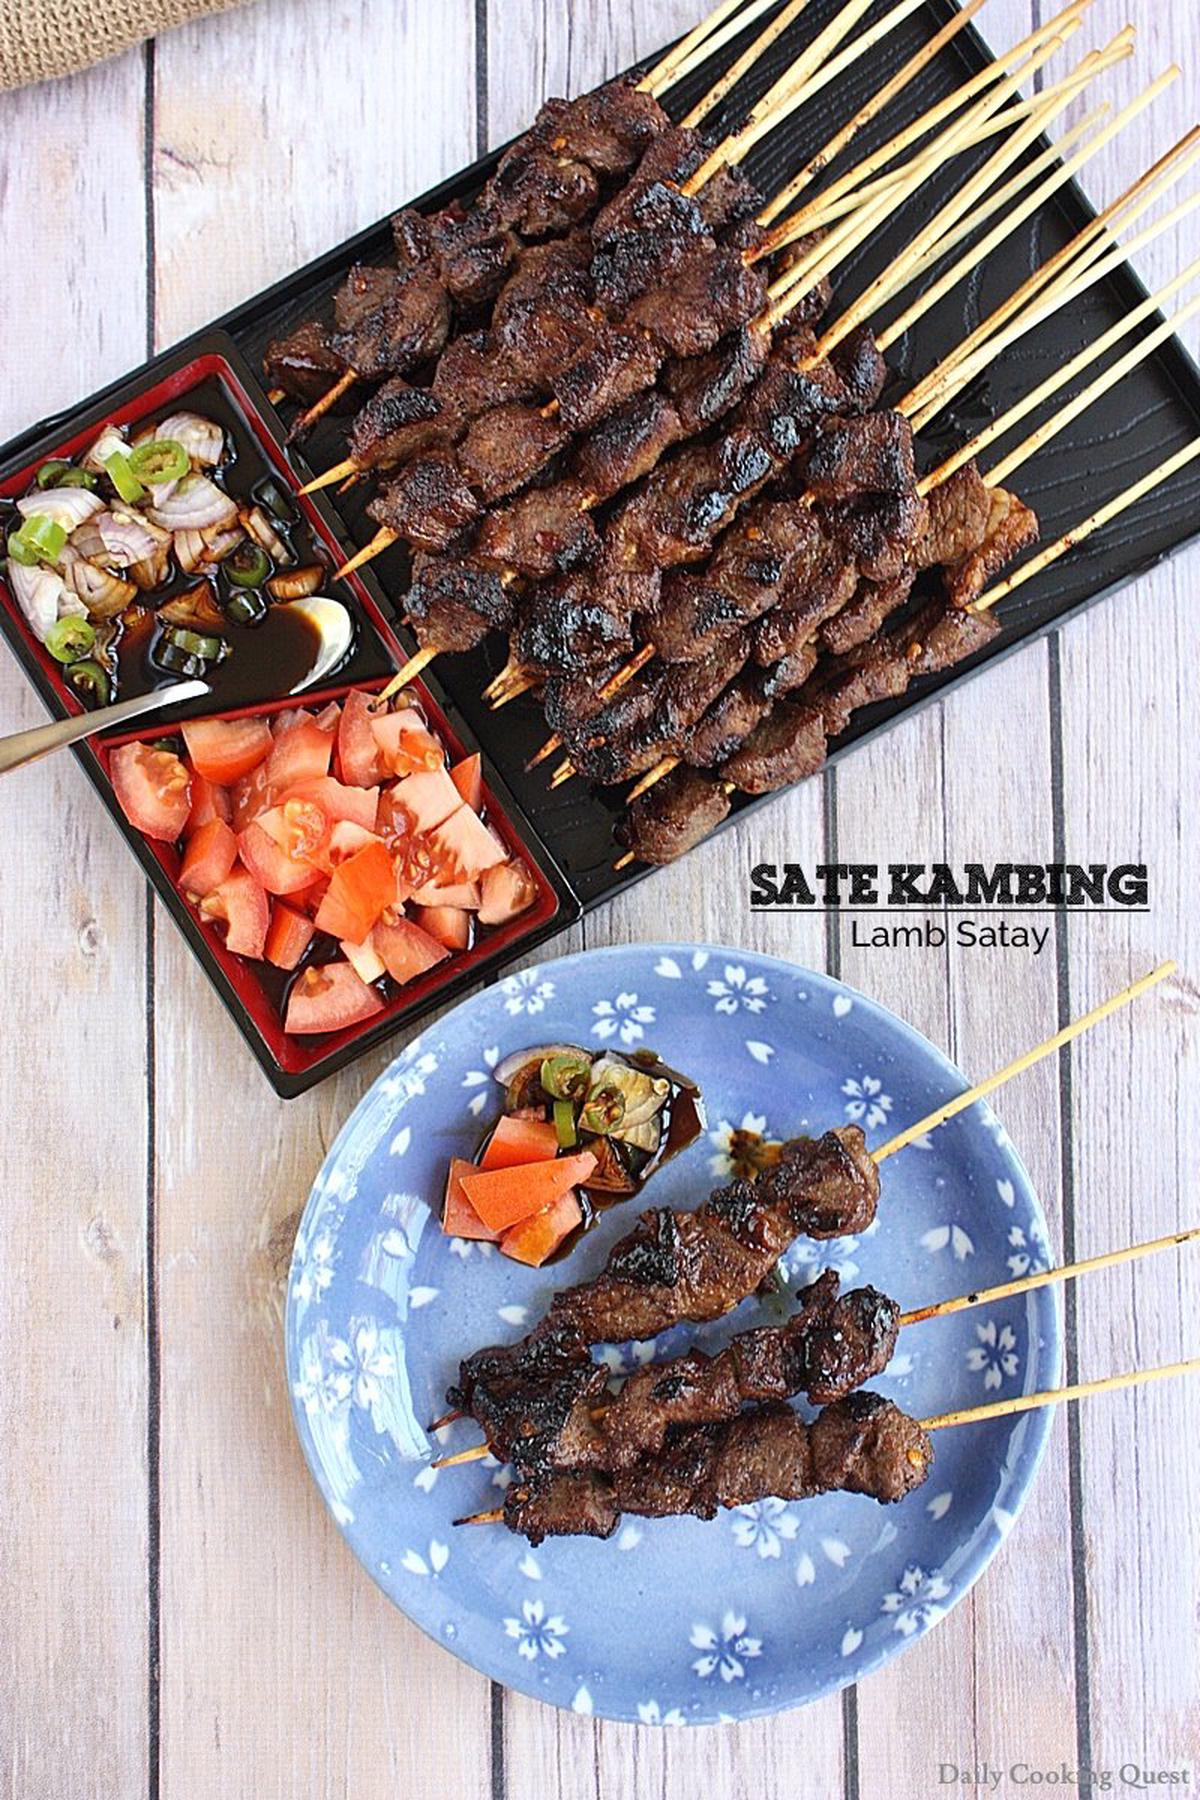 Sate Kambing - Lamb Satay